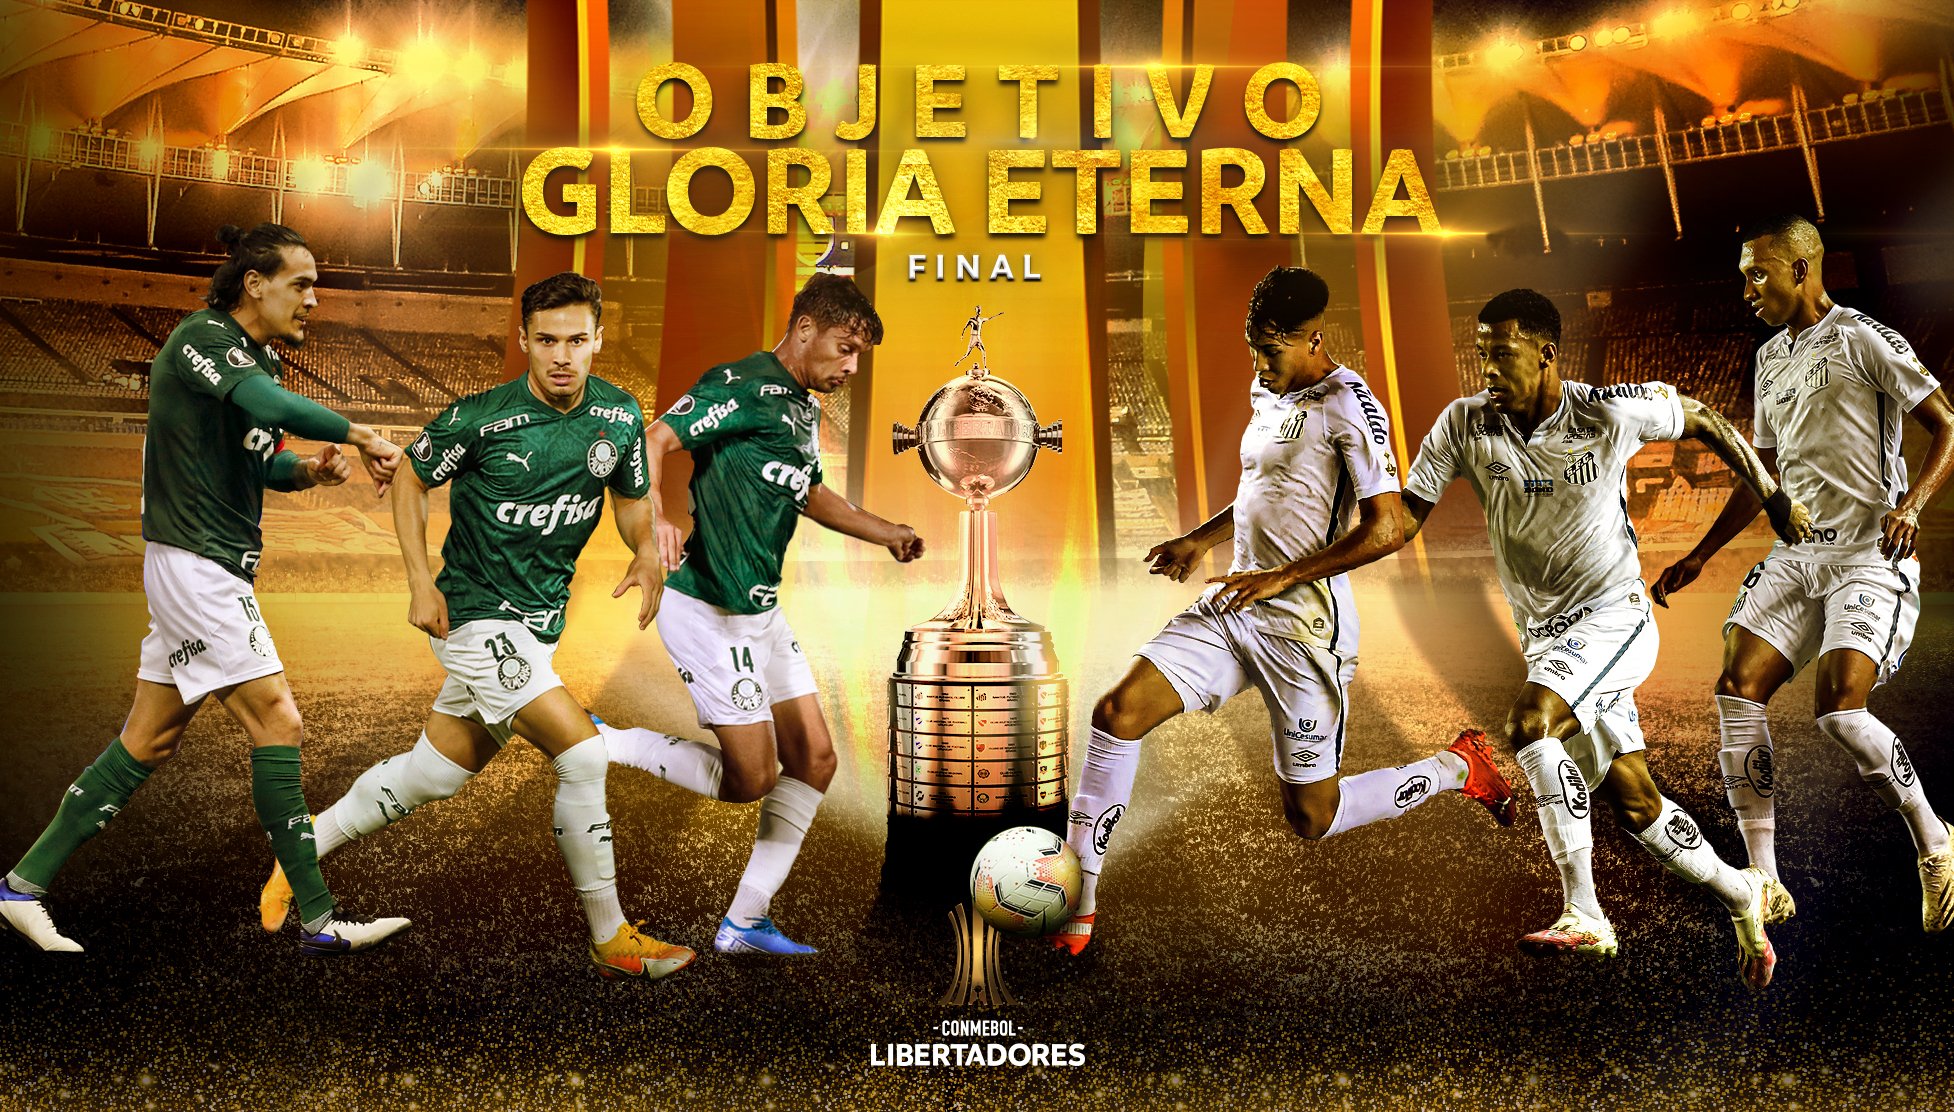 Фото: Twitter/@Libertadores